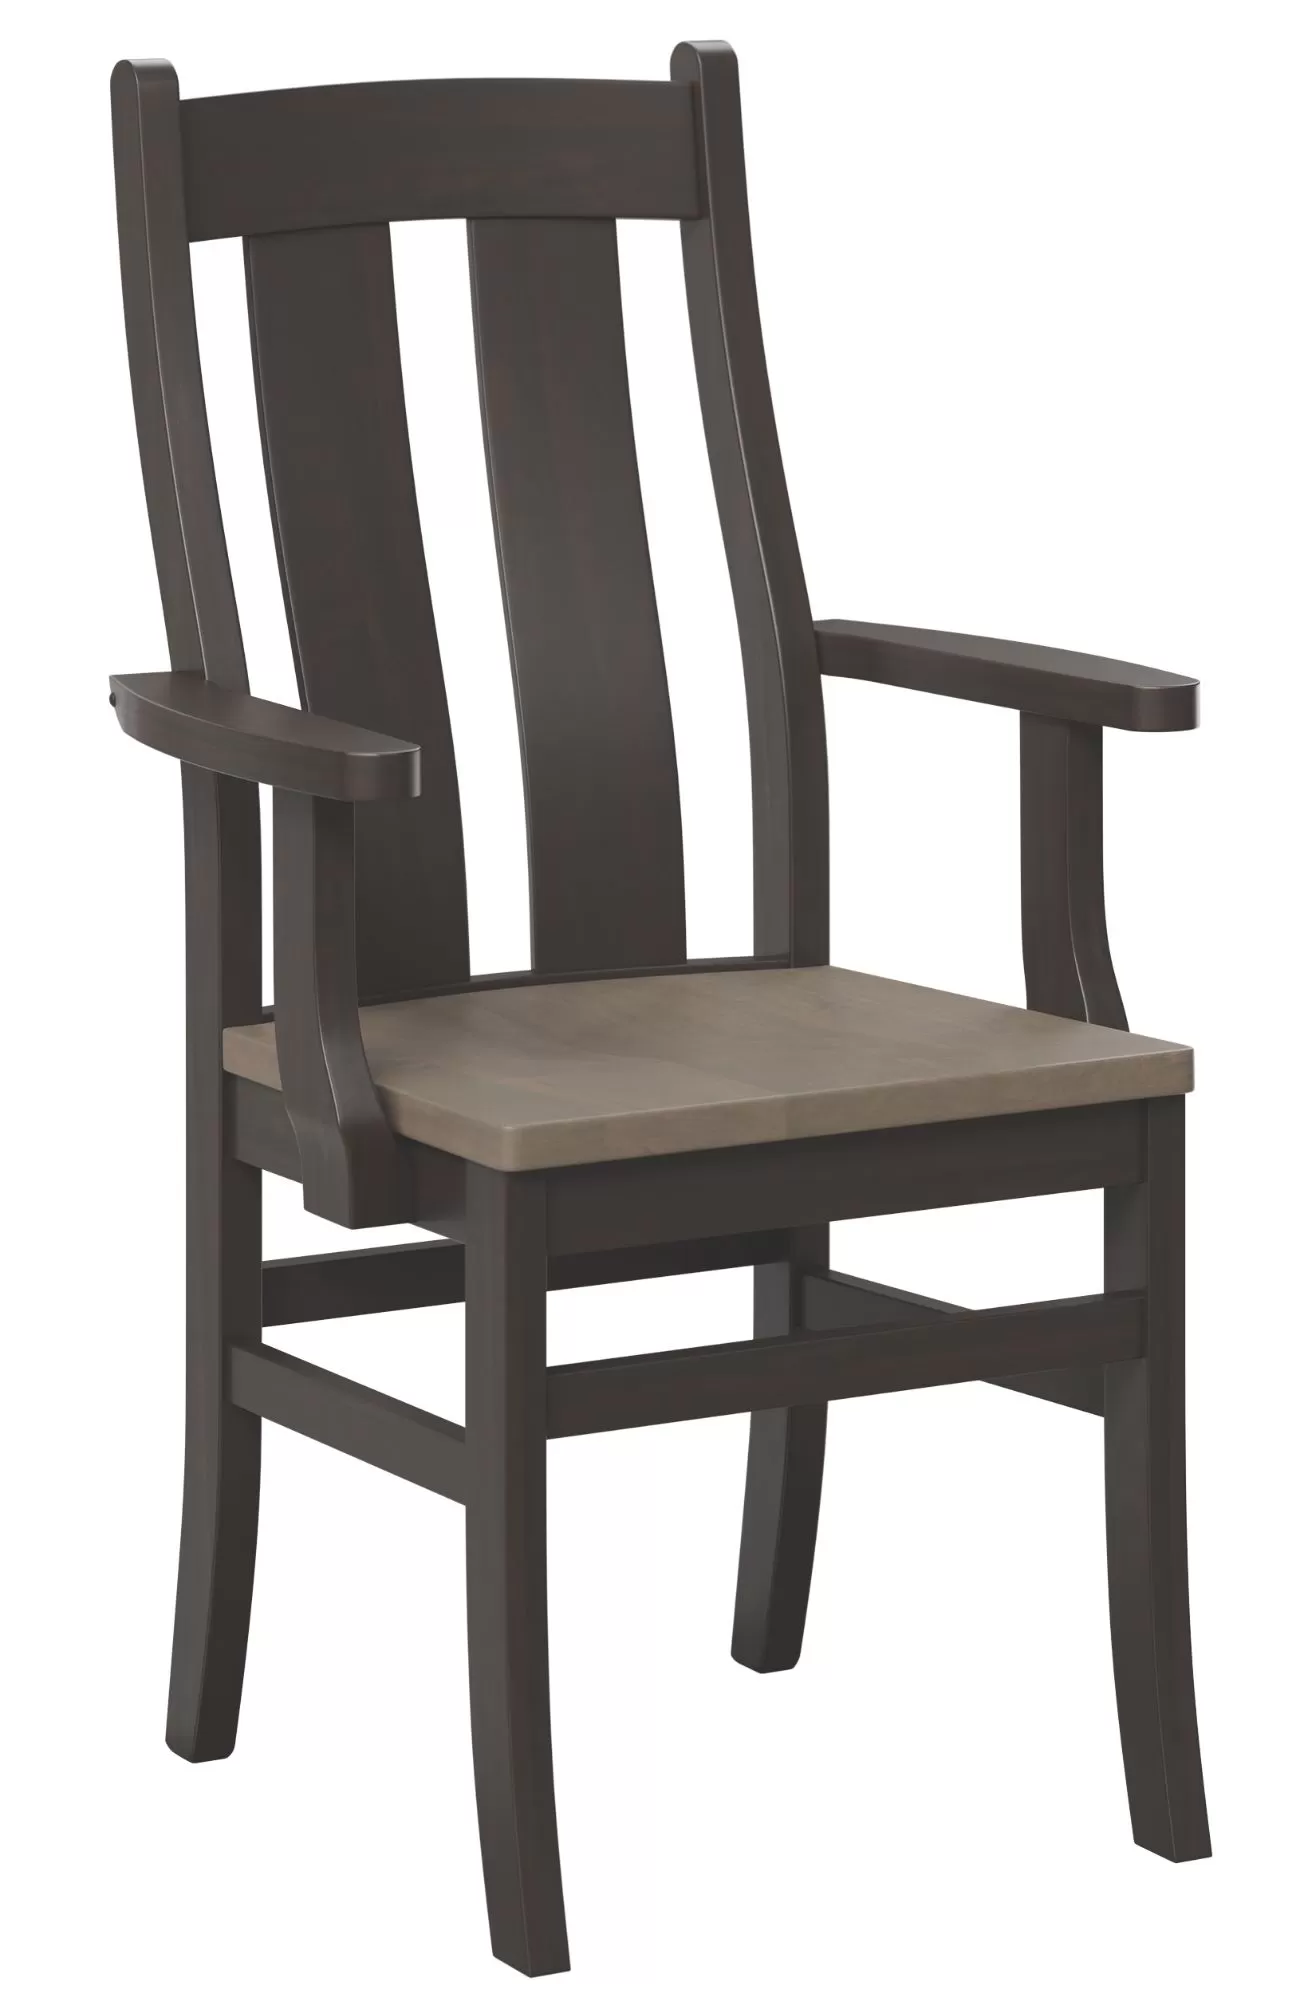 Arlington arm chair